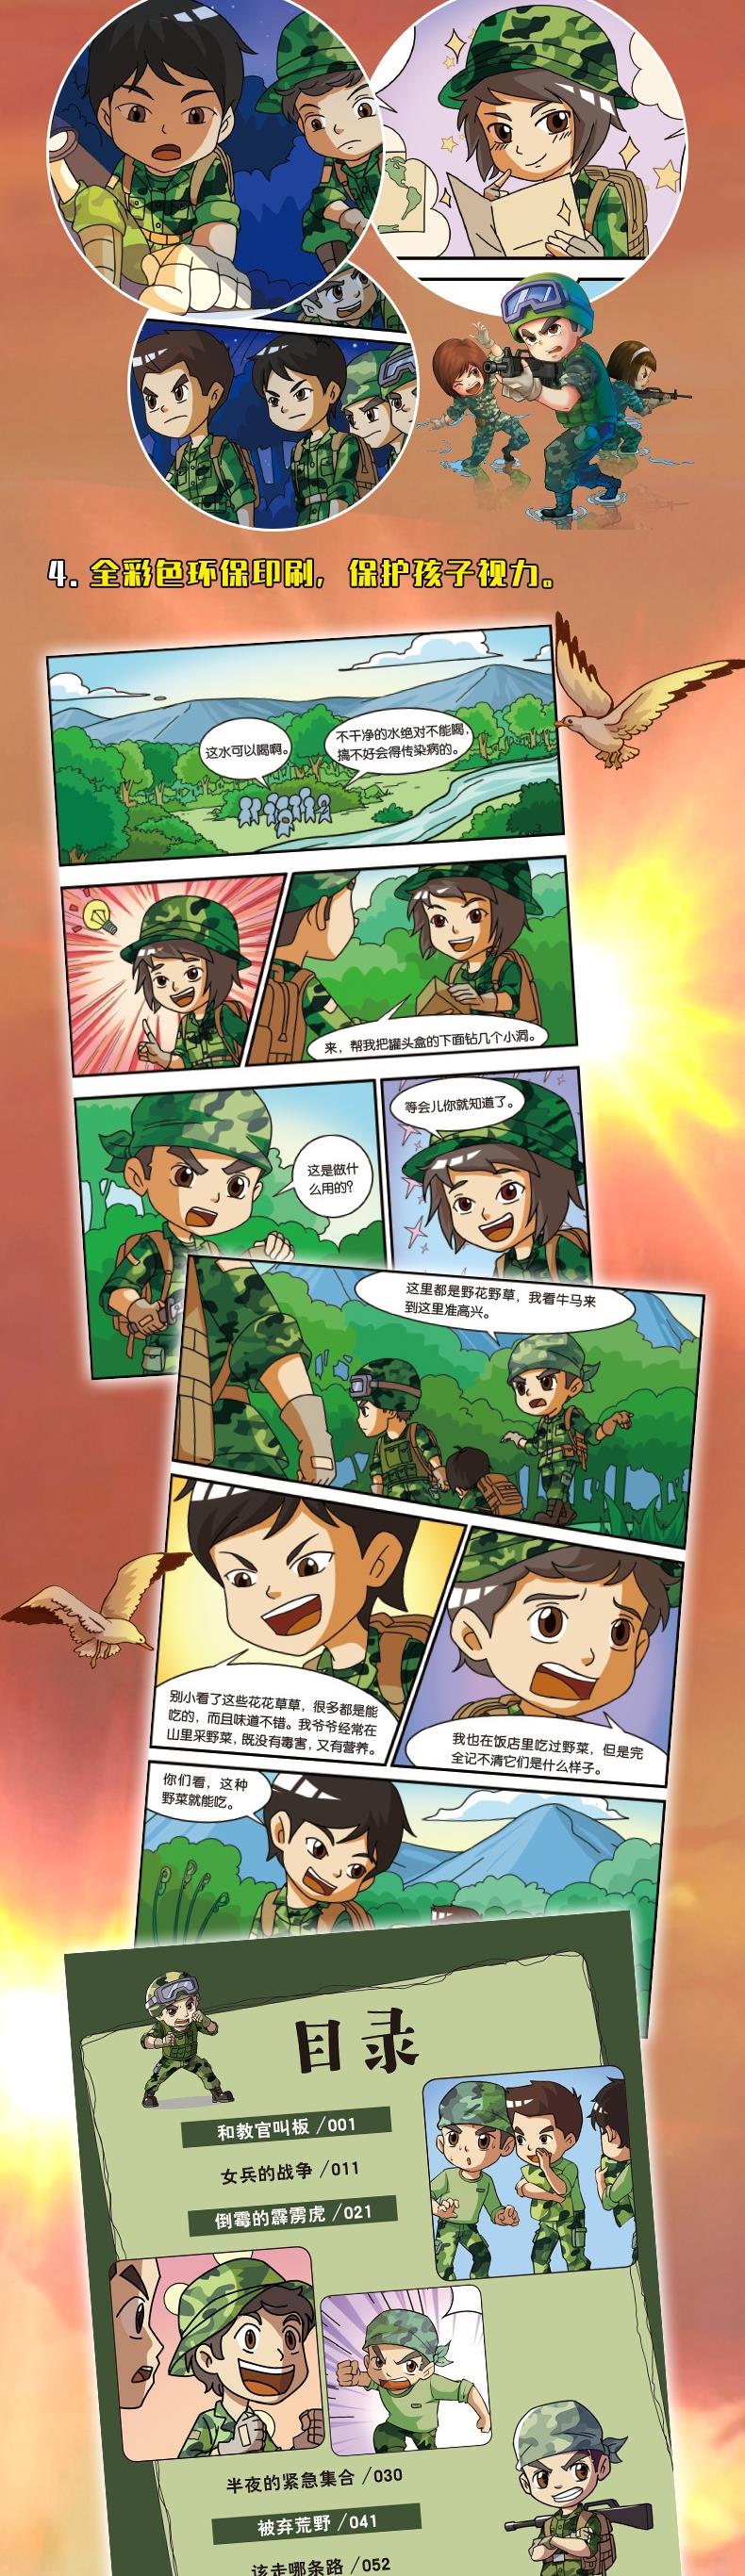 特种兵学校漫画版(第1季)(4册)